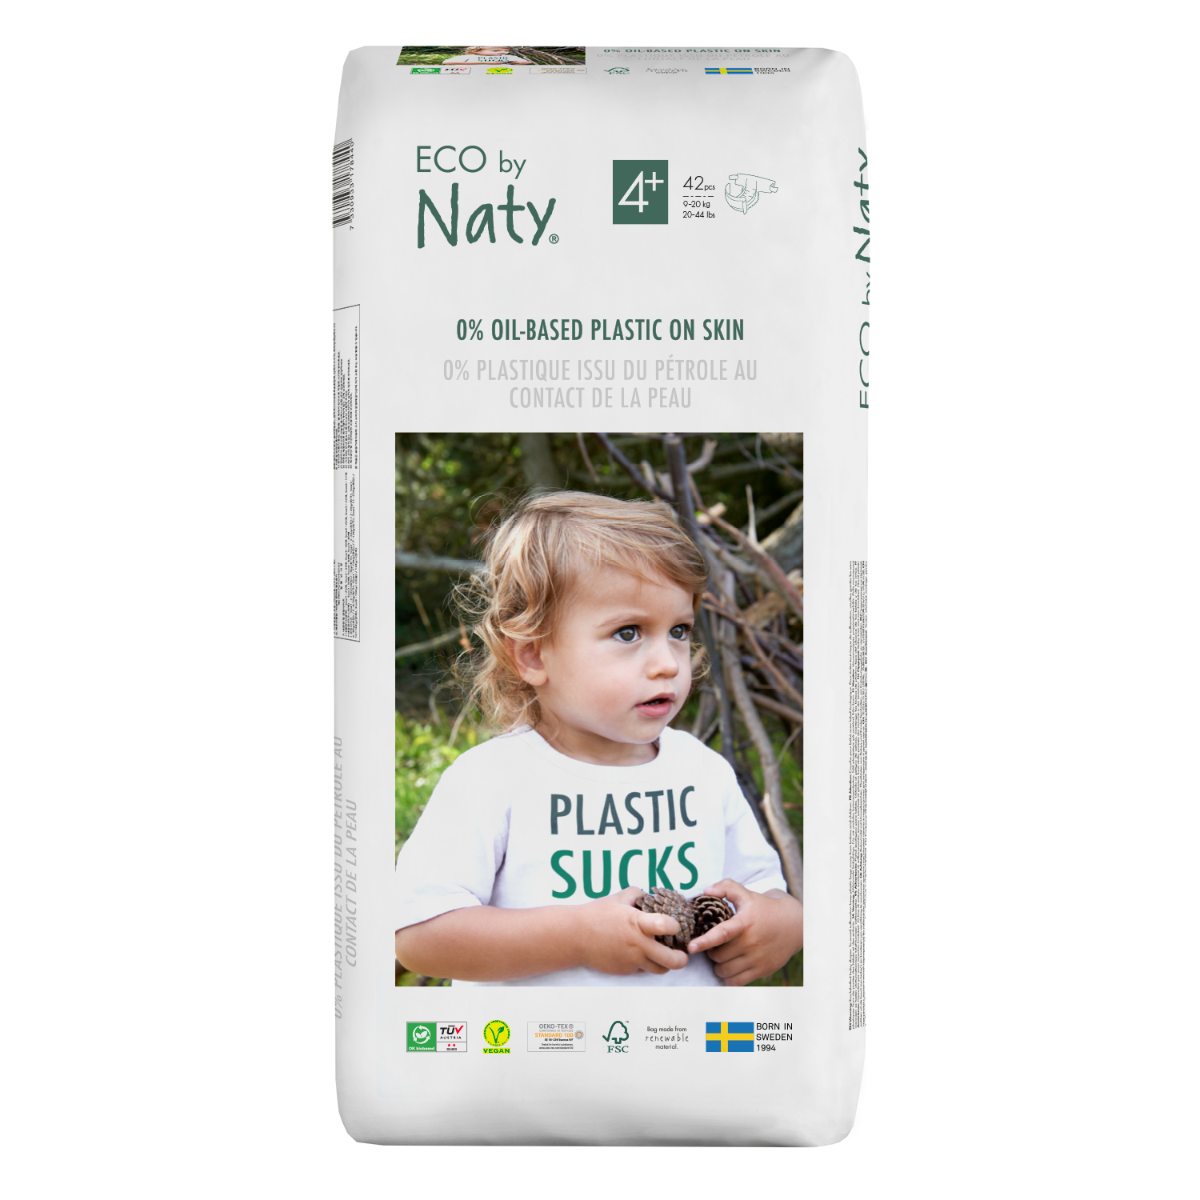 Eco by Naty, Taglia 4+, 84 pannolini, 9-20kg, Pannolino eco premium a base  vegetale con lo 0% di plastica sulla pelle